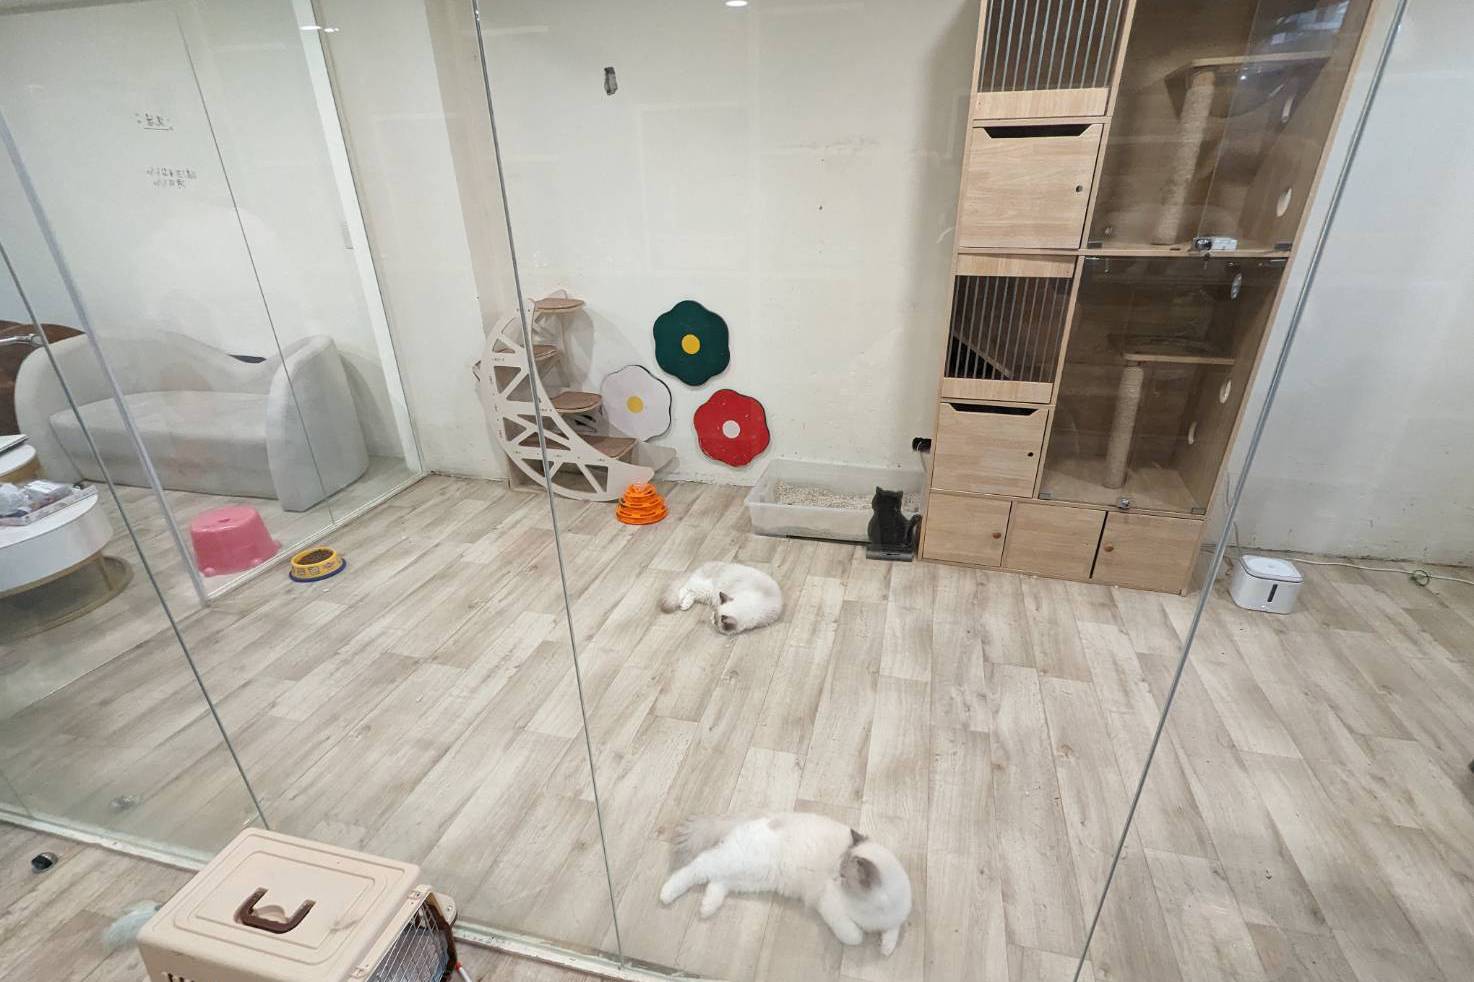 Un café pour chats bien connu à Taichung a été accusé d’avoir maltraité des chats. Le magasin a répondu : « Les chats n’ont pas été maltraités » lors du conflit de travail. Zhongchang Investment Local |